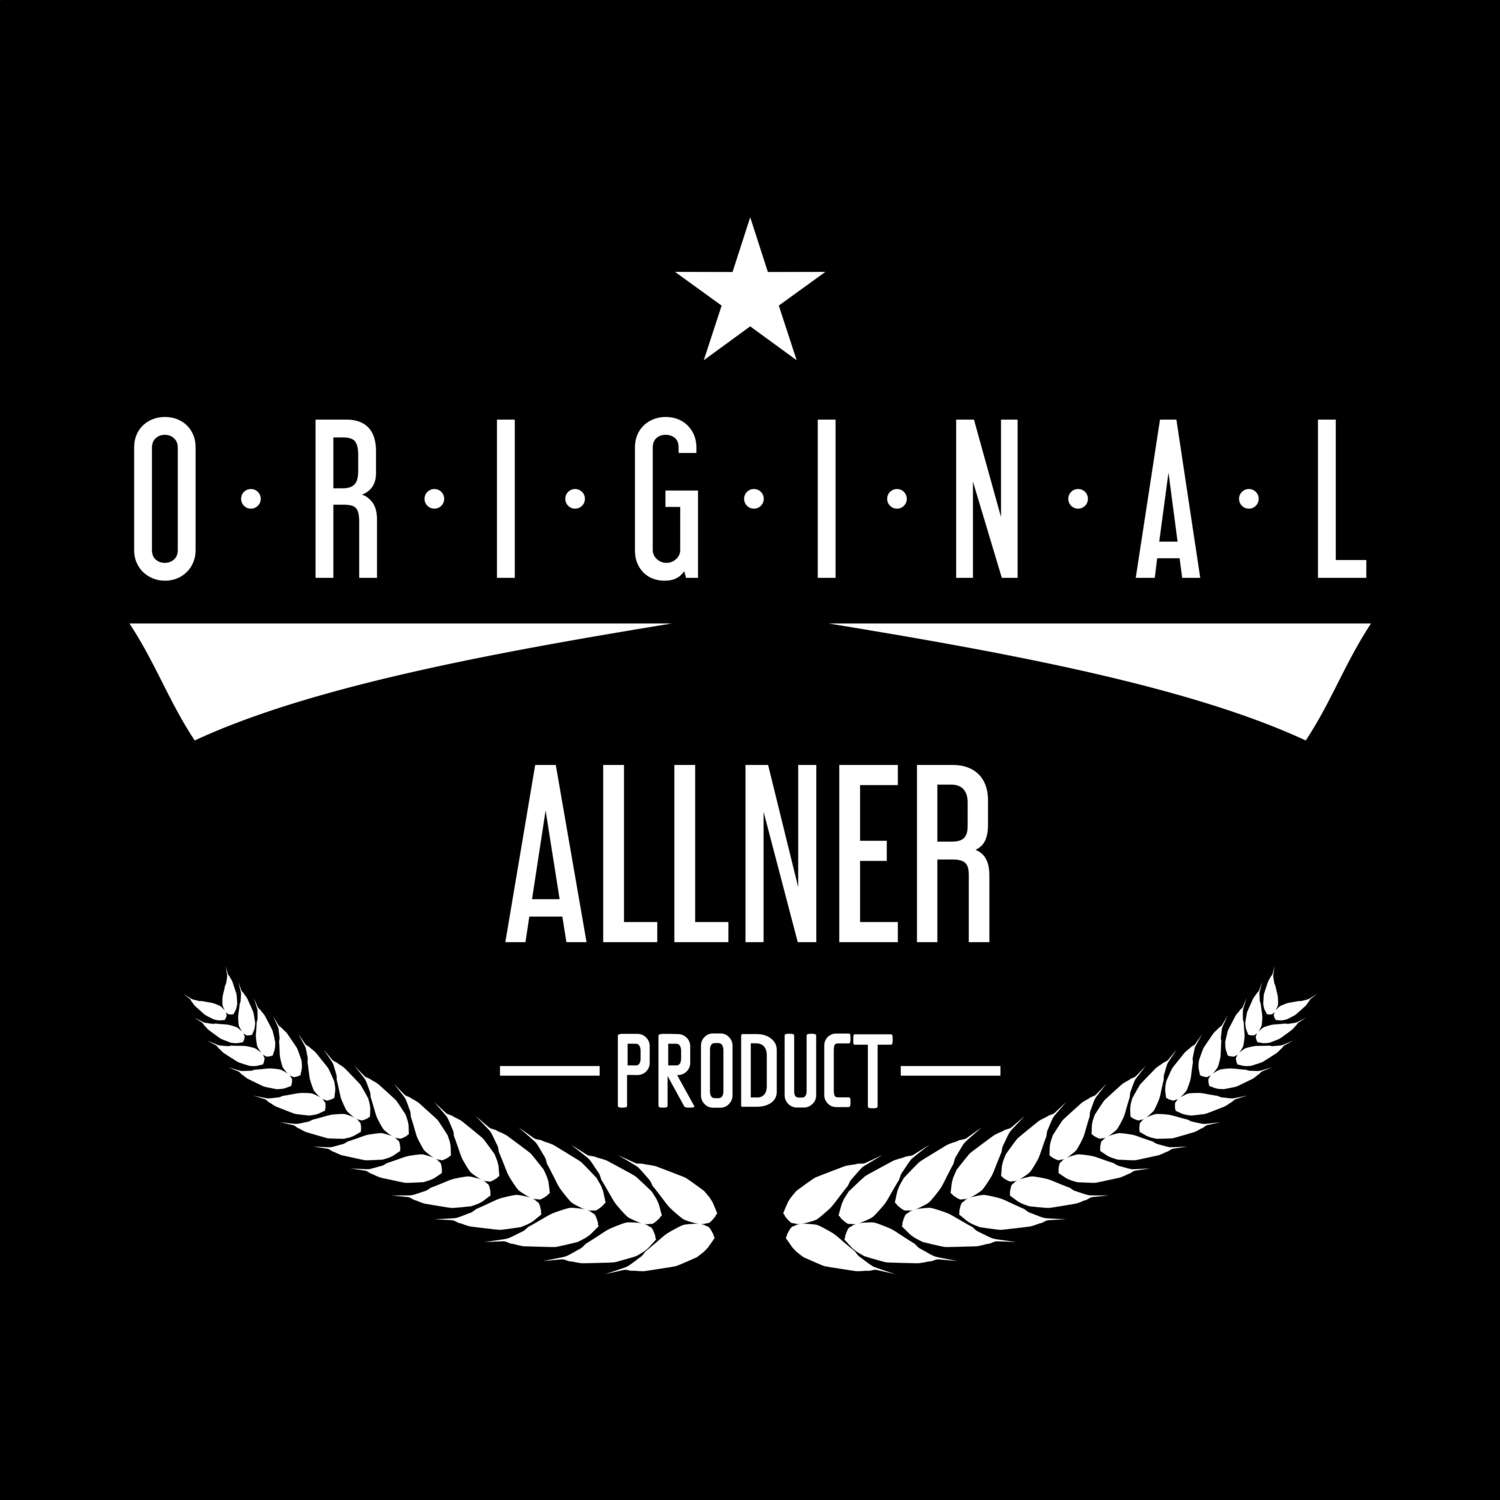 Allner T-Shirt »Original Product«